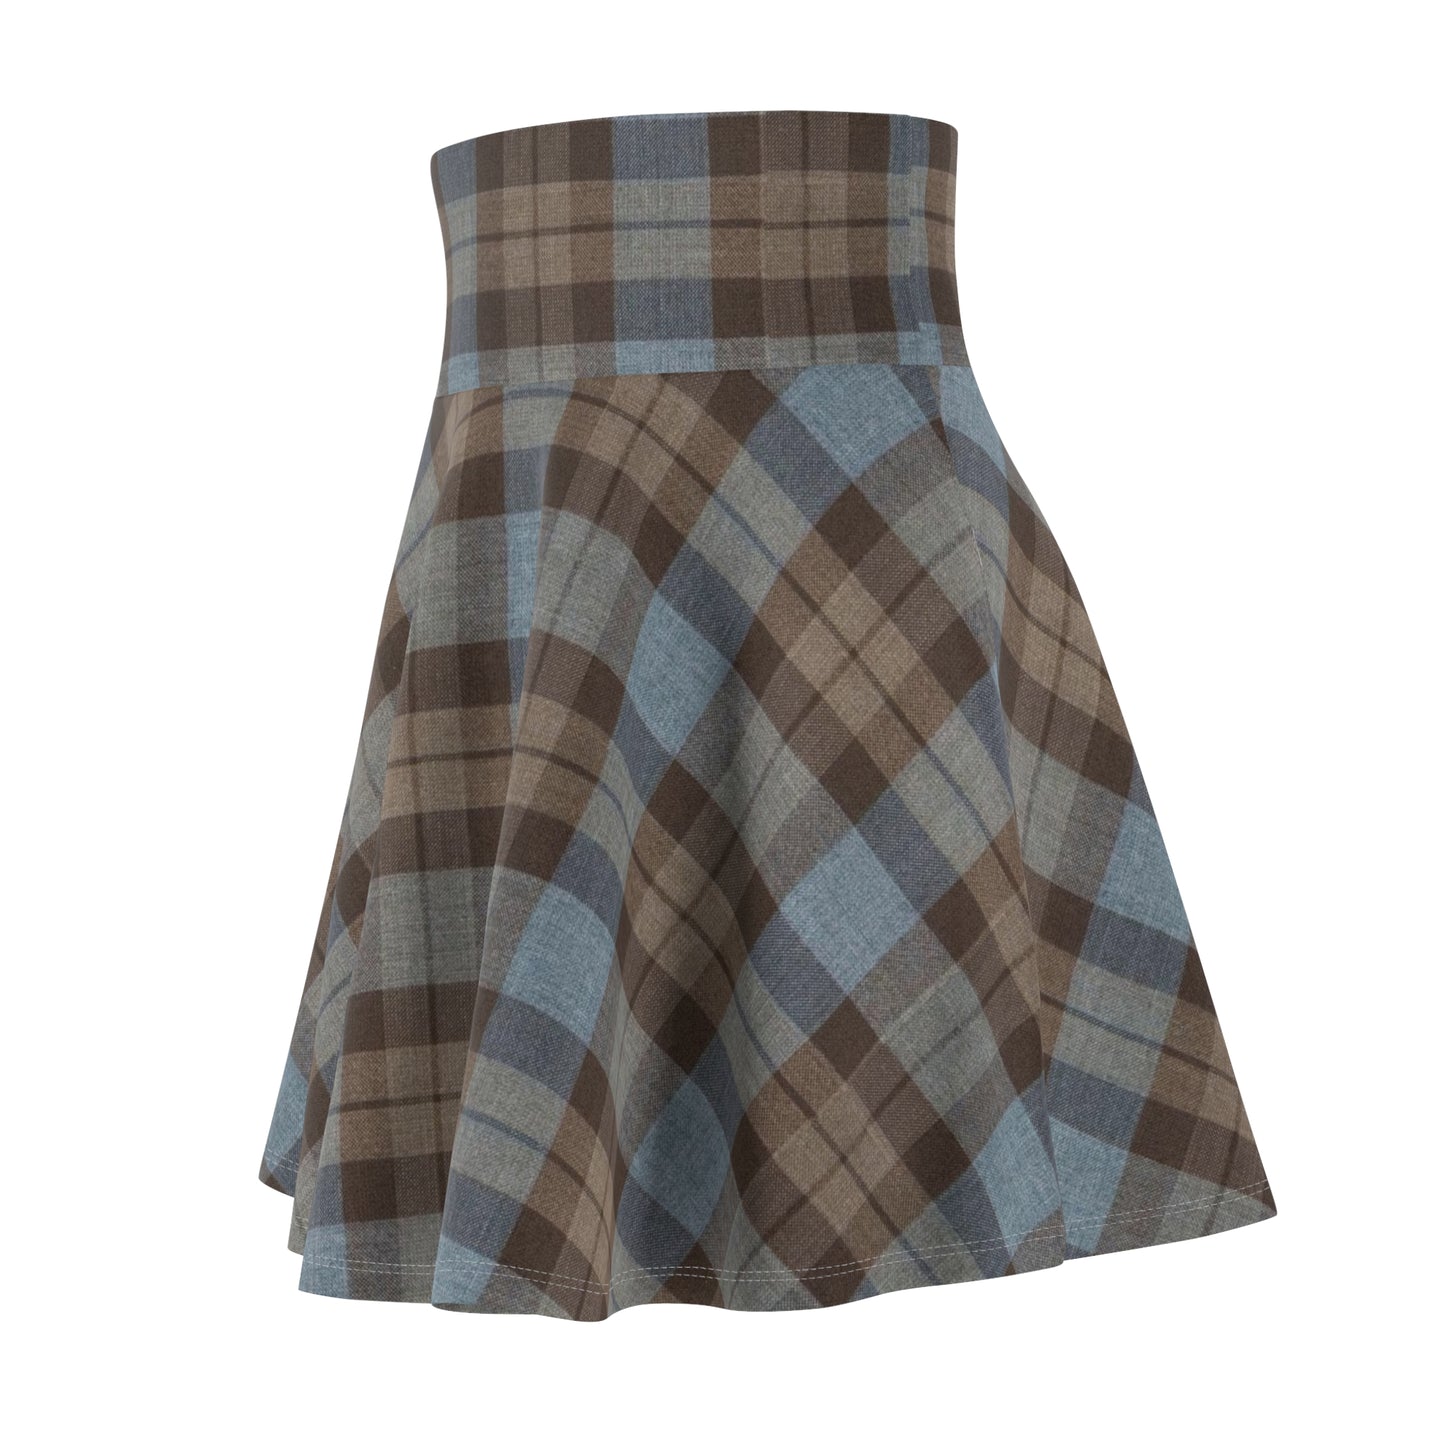 Outlander Tartan Women's Skirt